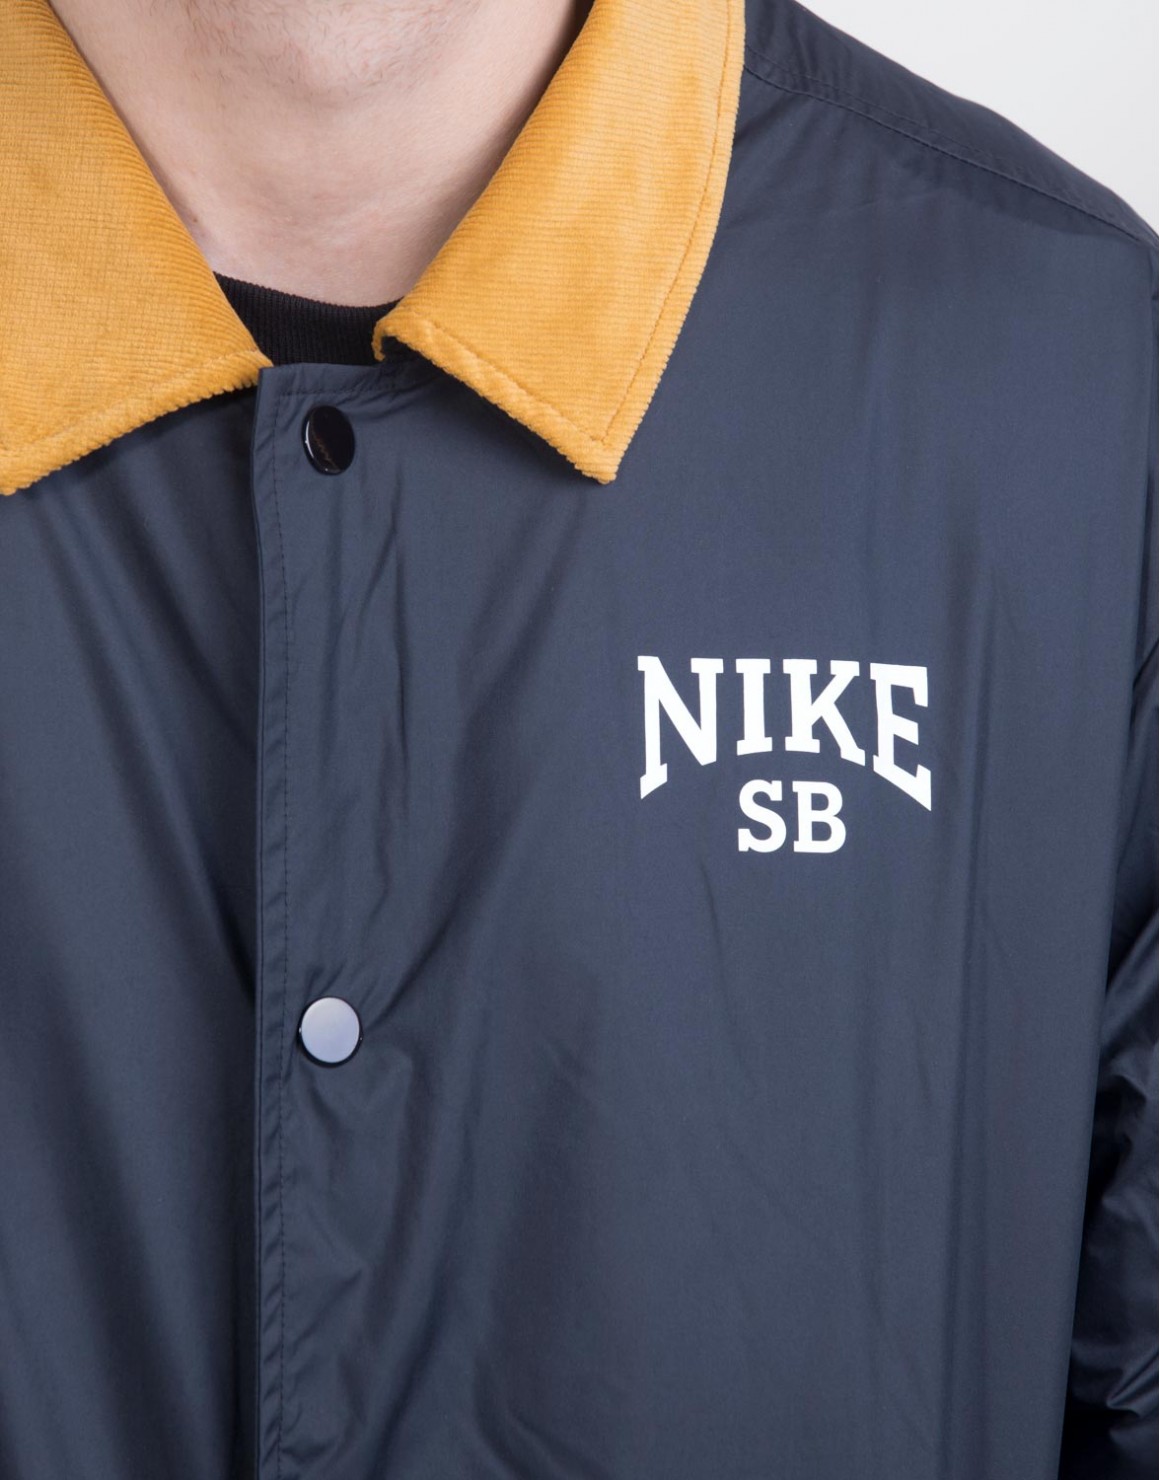 Nike SB Novelty Coaches Jacket